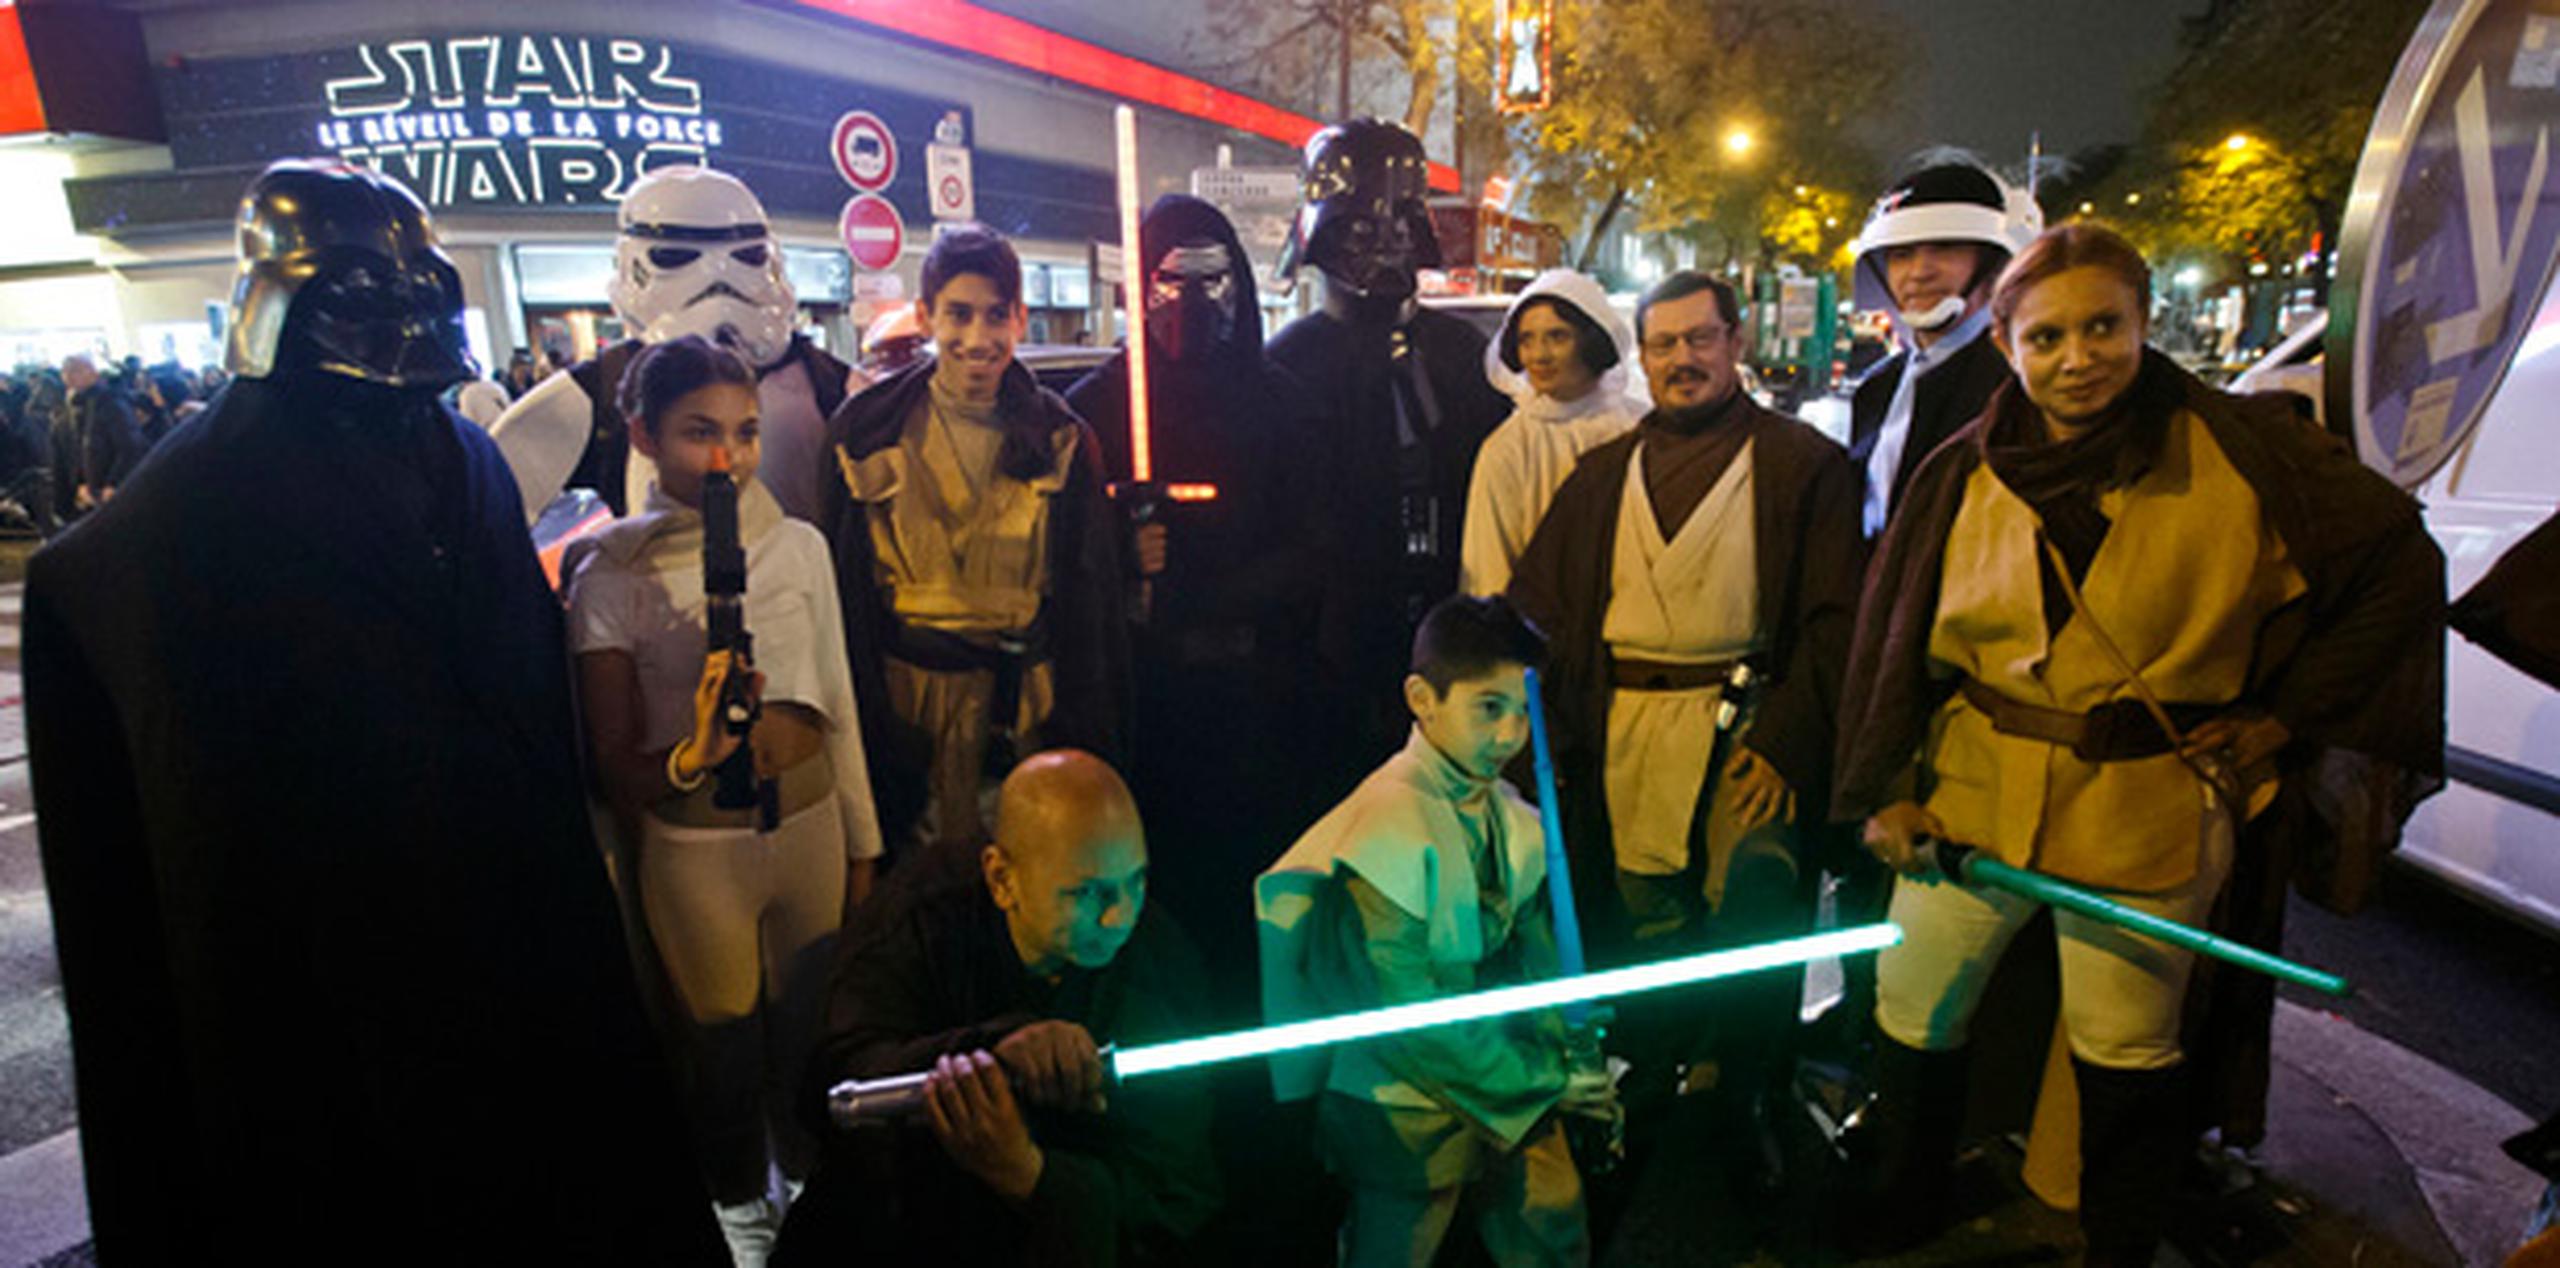 Gente disfrazada de personajes de la película antes de una proyección de "Star Wars: The Force Awakens" en París. (AP)